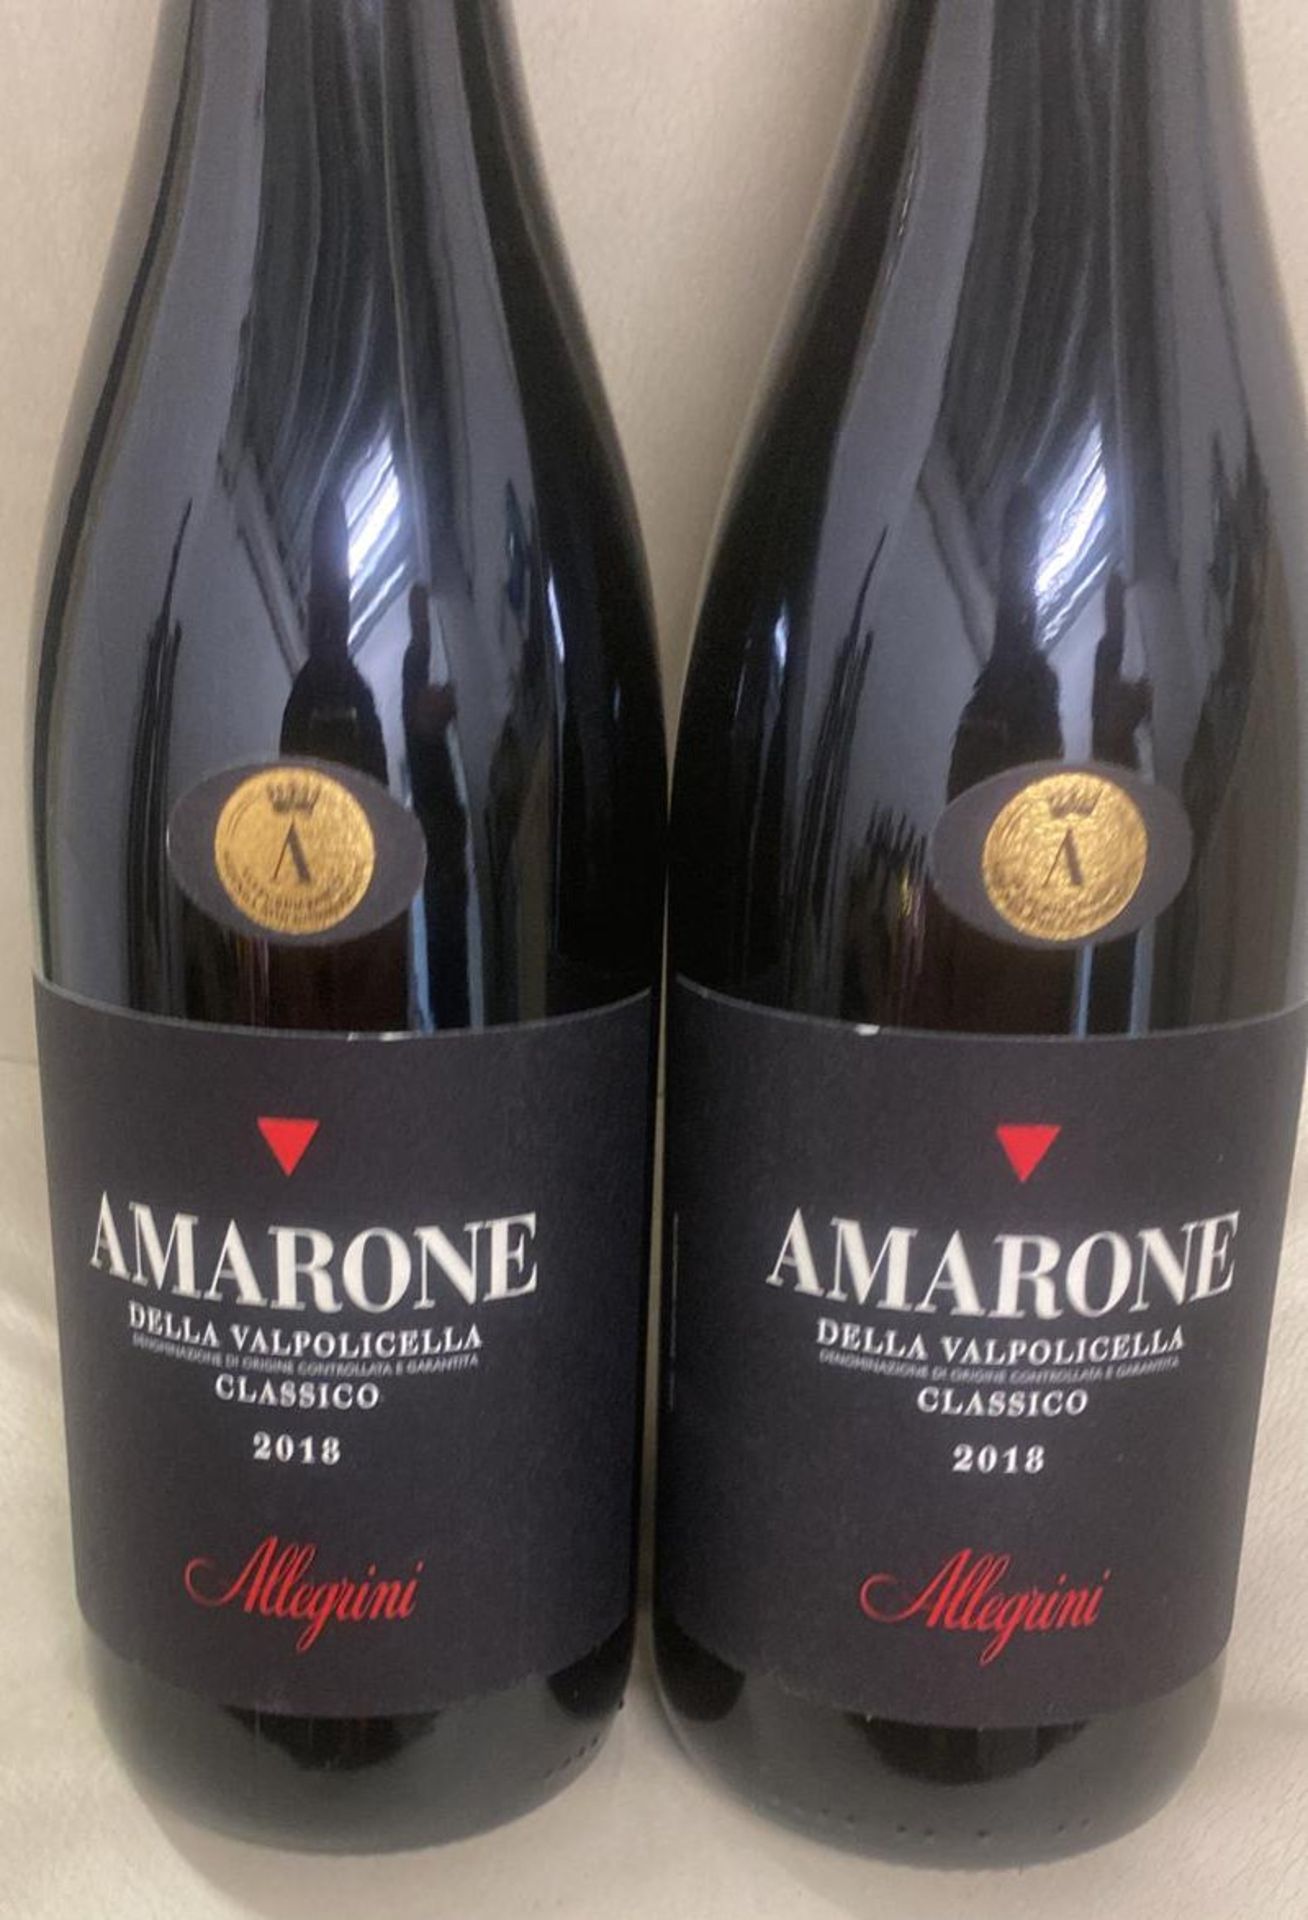 2 x Bottles of 2018 Allegrini Amarone Della Valpolicella Classico DOCG Red Wine - Retail Price £ - Image 2 of 2